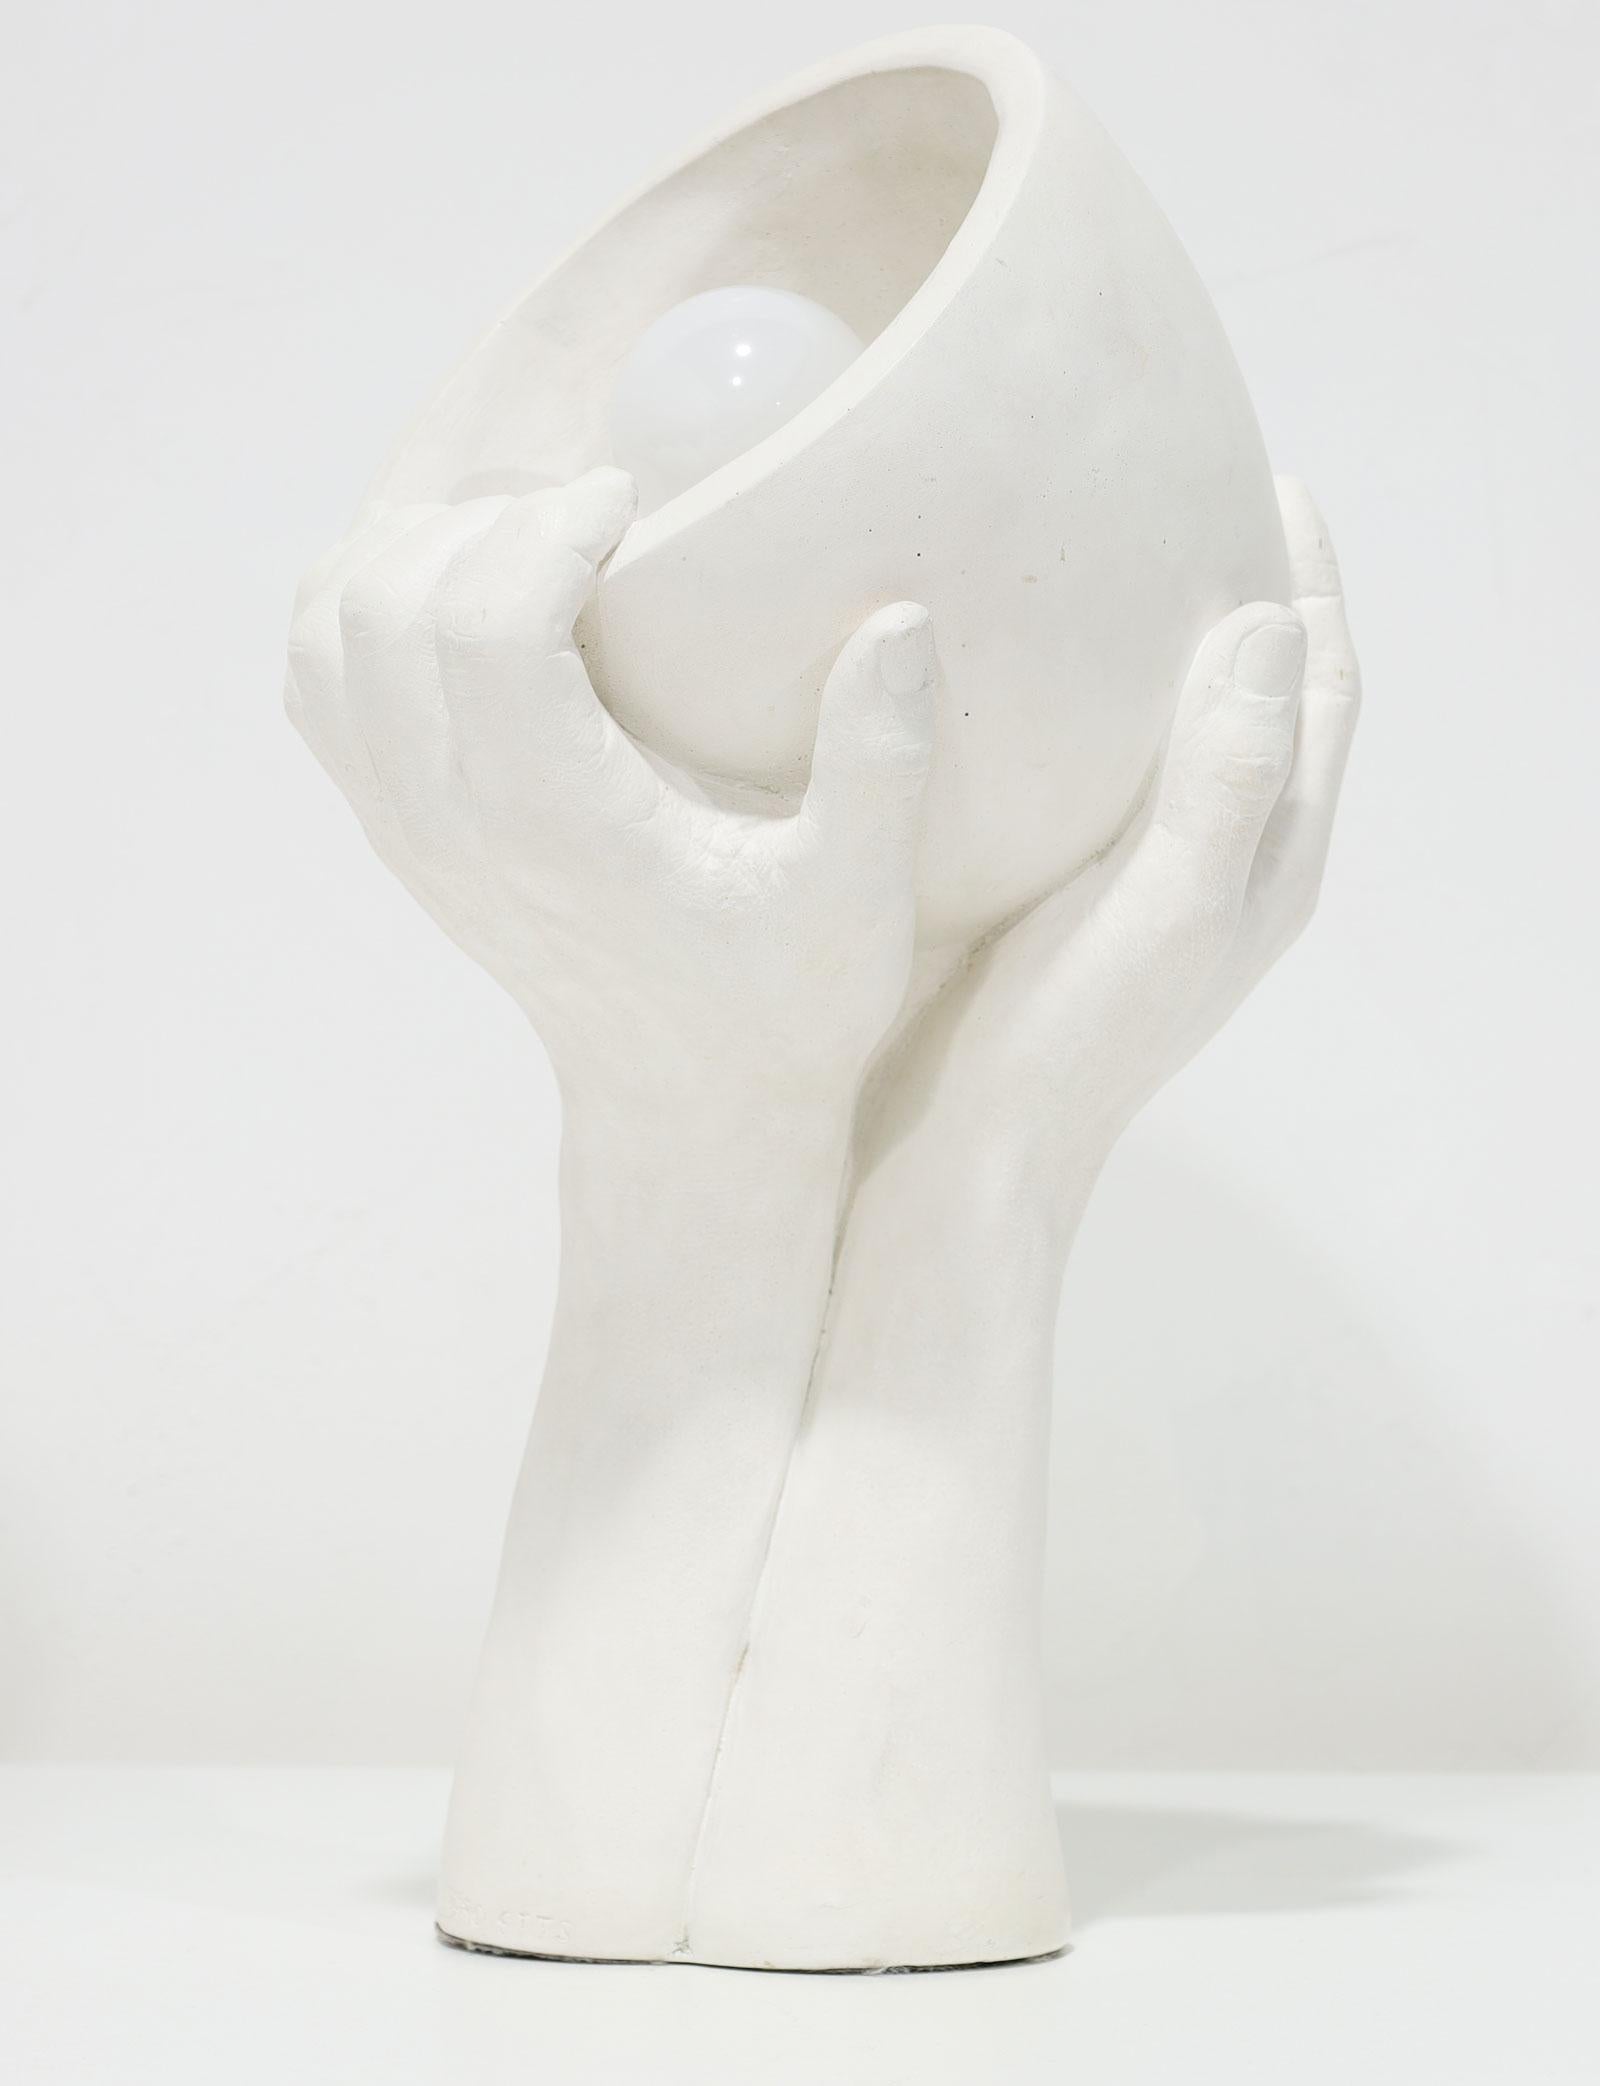 Richard ETTE (20/21ème siècle) est actif/vivant à New York, Californie. Richard ETTE est connu pour la sculpture de corps composite, le surréalisme, la fantaisie, les moulages de vie.

Extrait de son site web :
En 1962, à l'âge de dix-sept ans, je